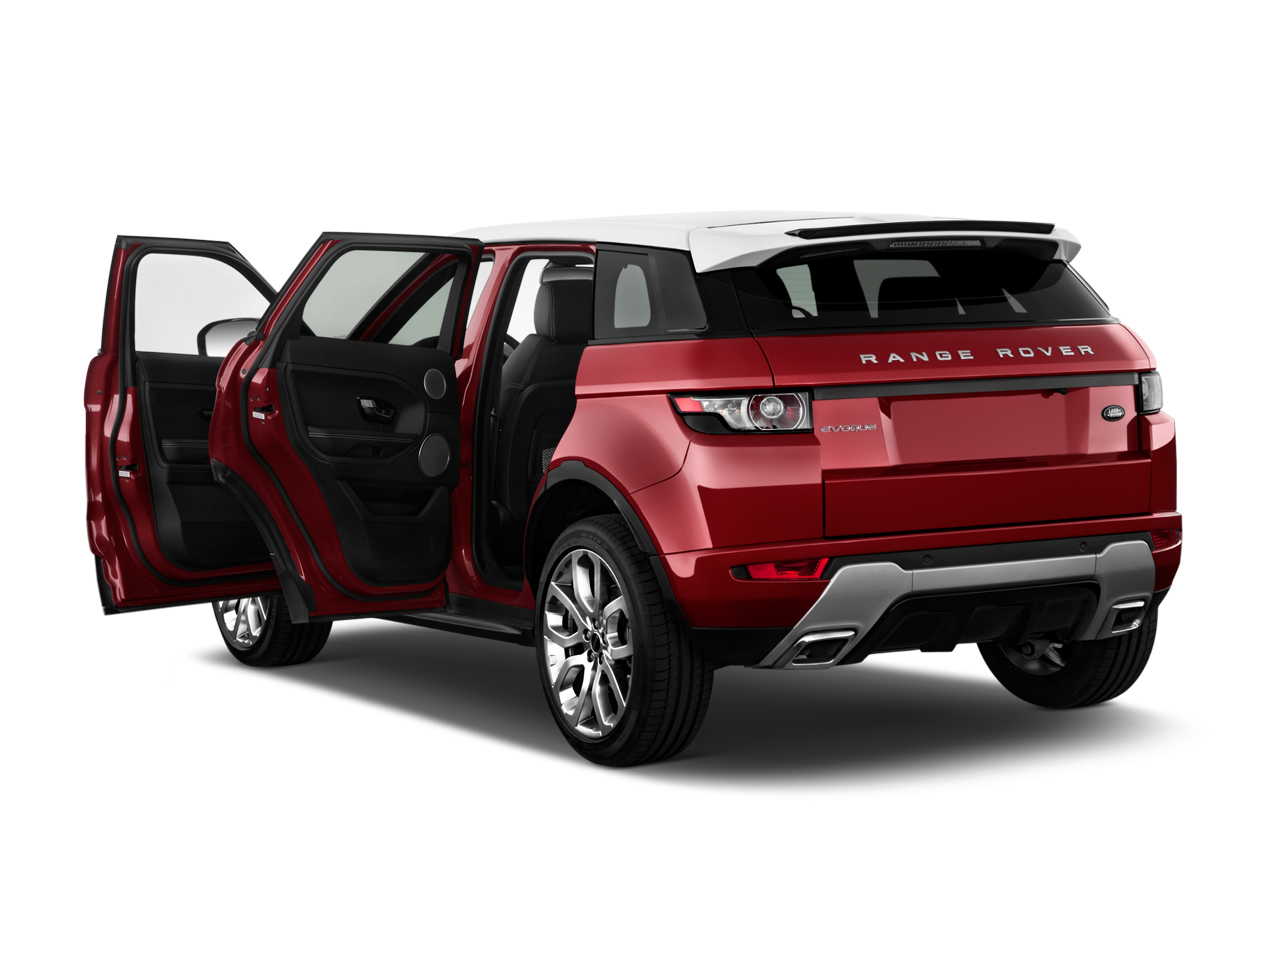 Chi tiết xe Land Rover Range Rover Evoque 2013